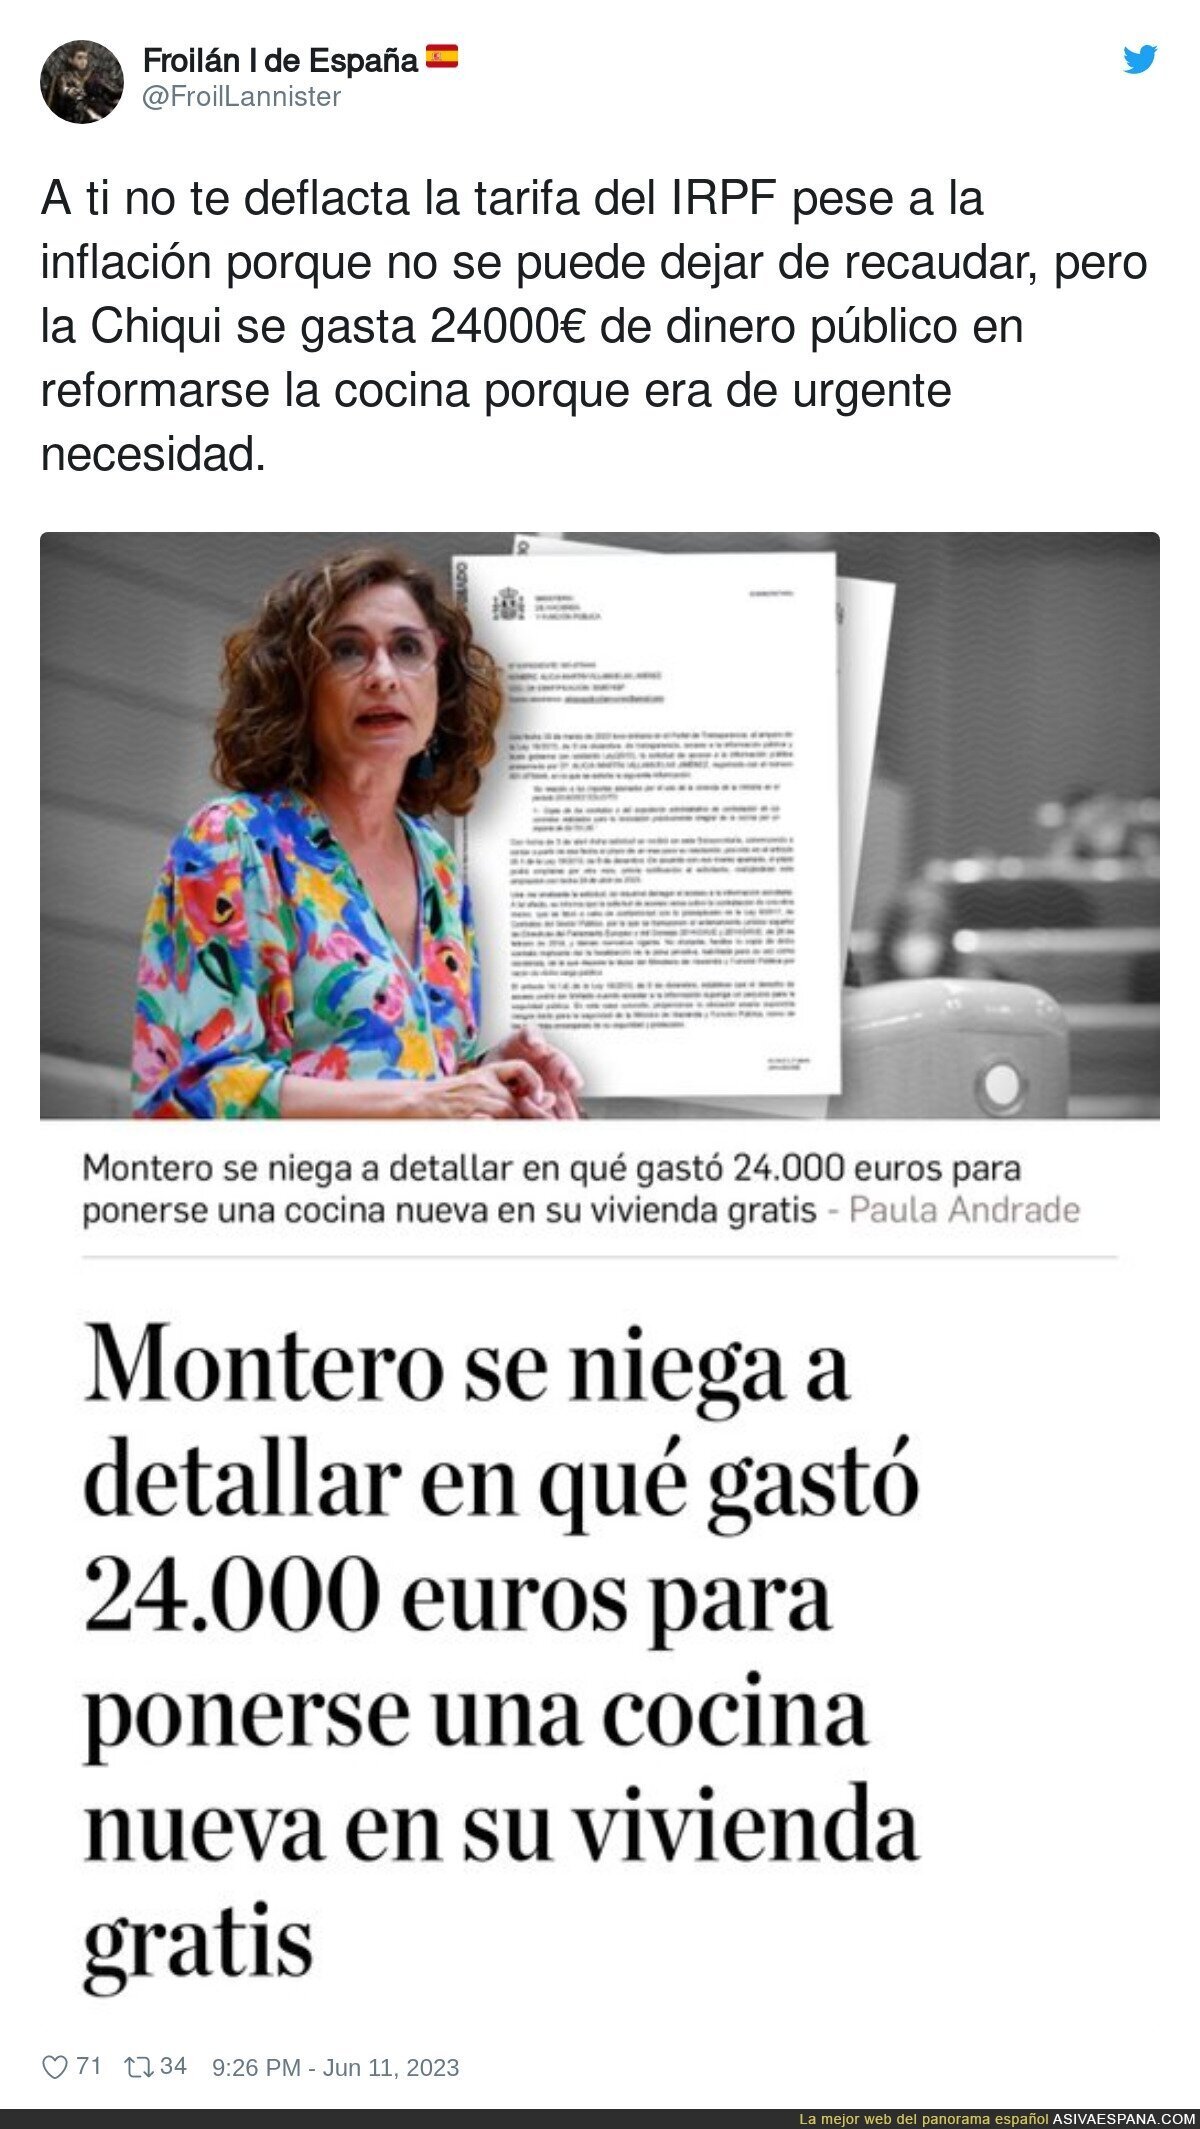 Los gastos de dinero público de Montero en una urgencia como una cocina